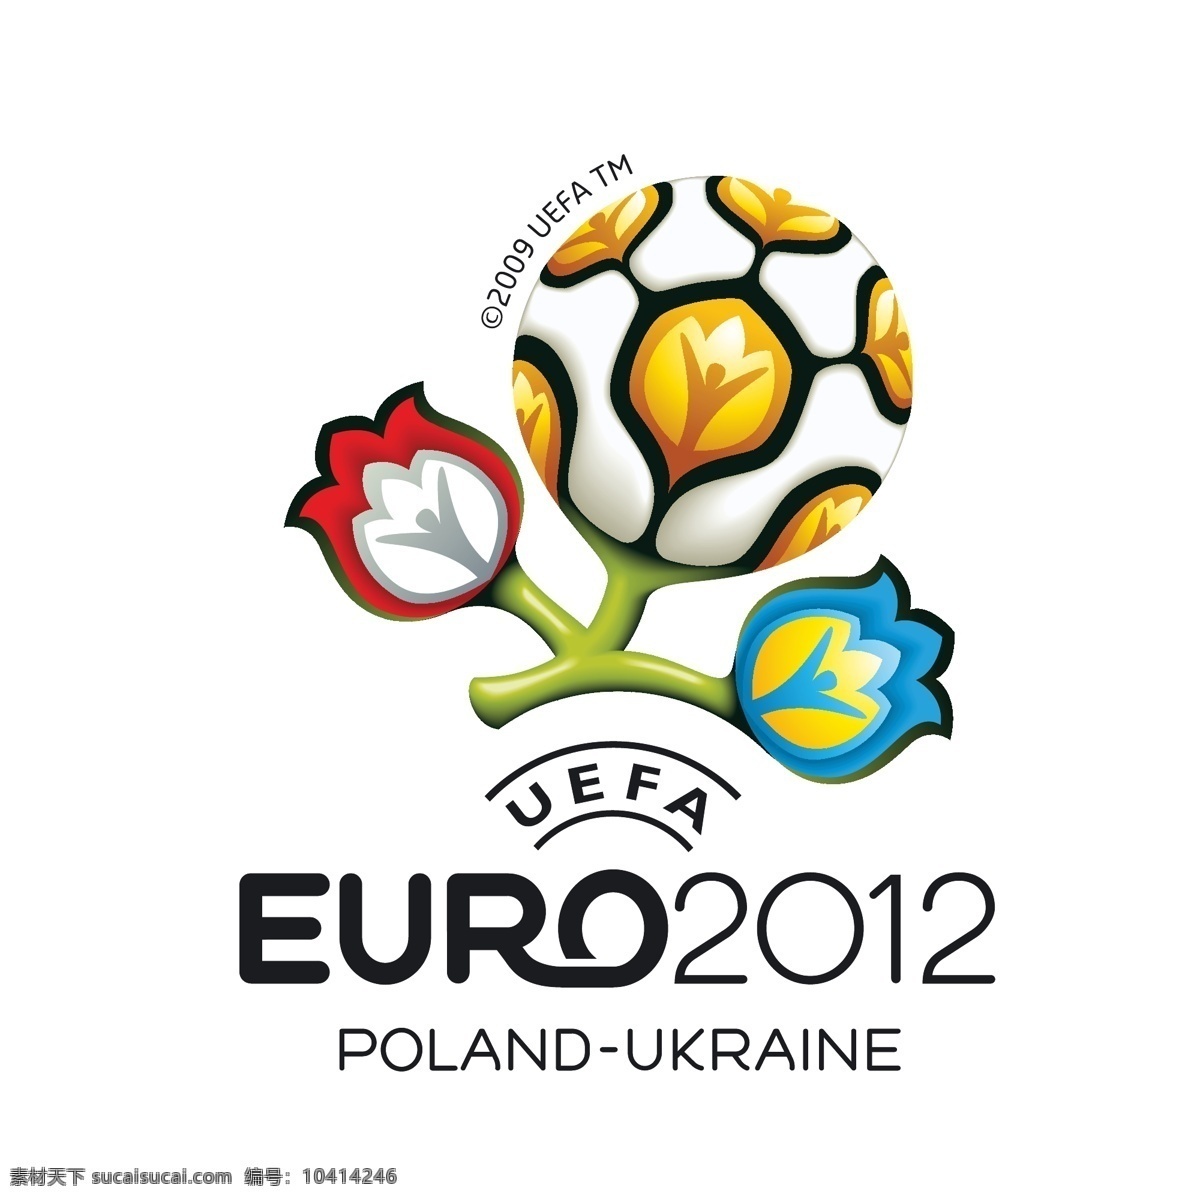 欧洲杯 标志设计 矢量 logo 标识标志 标志 花朵 会徽 立体感 矢量素材 足球 赛事 矢量图